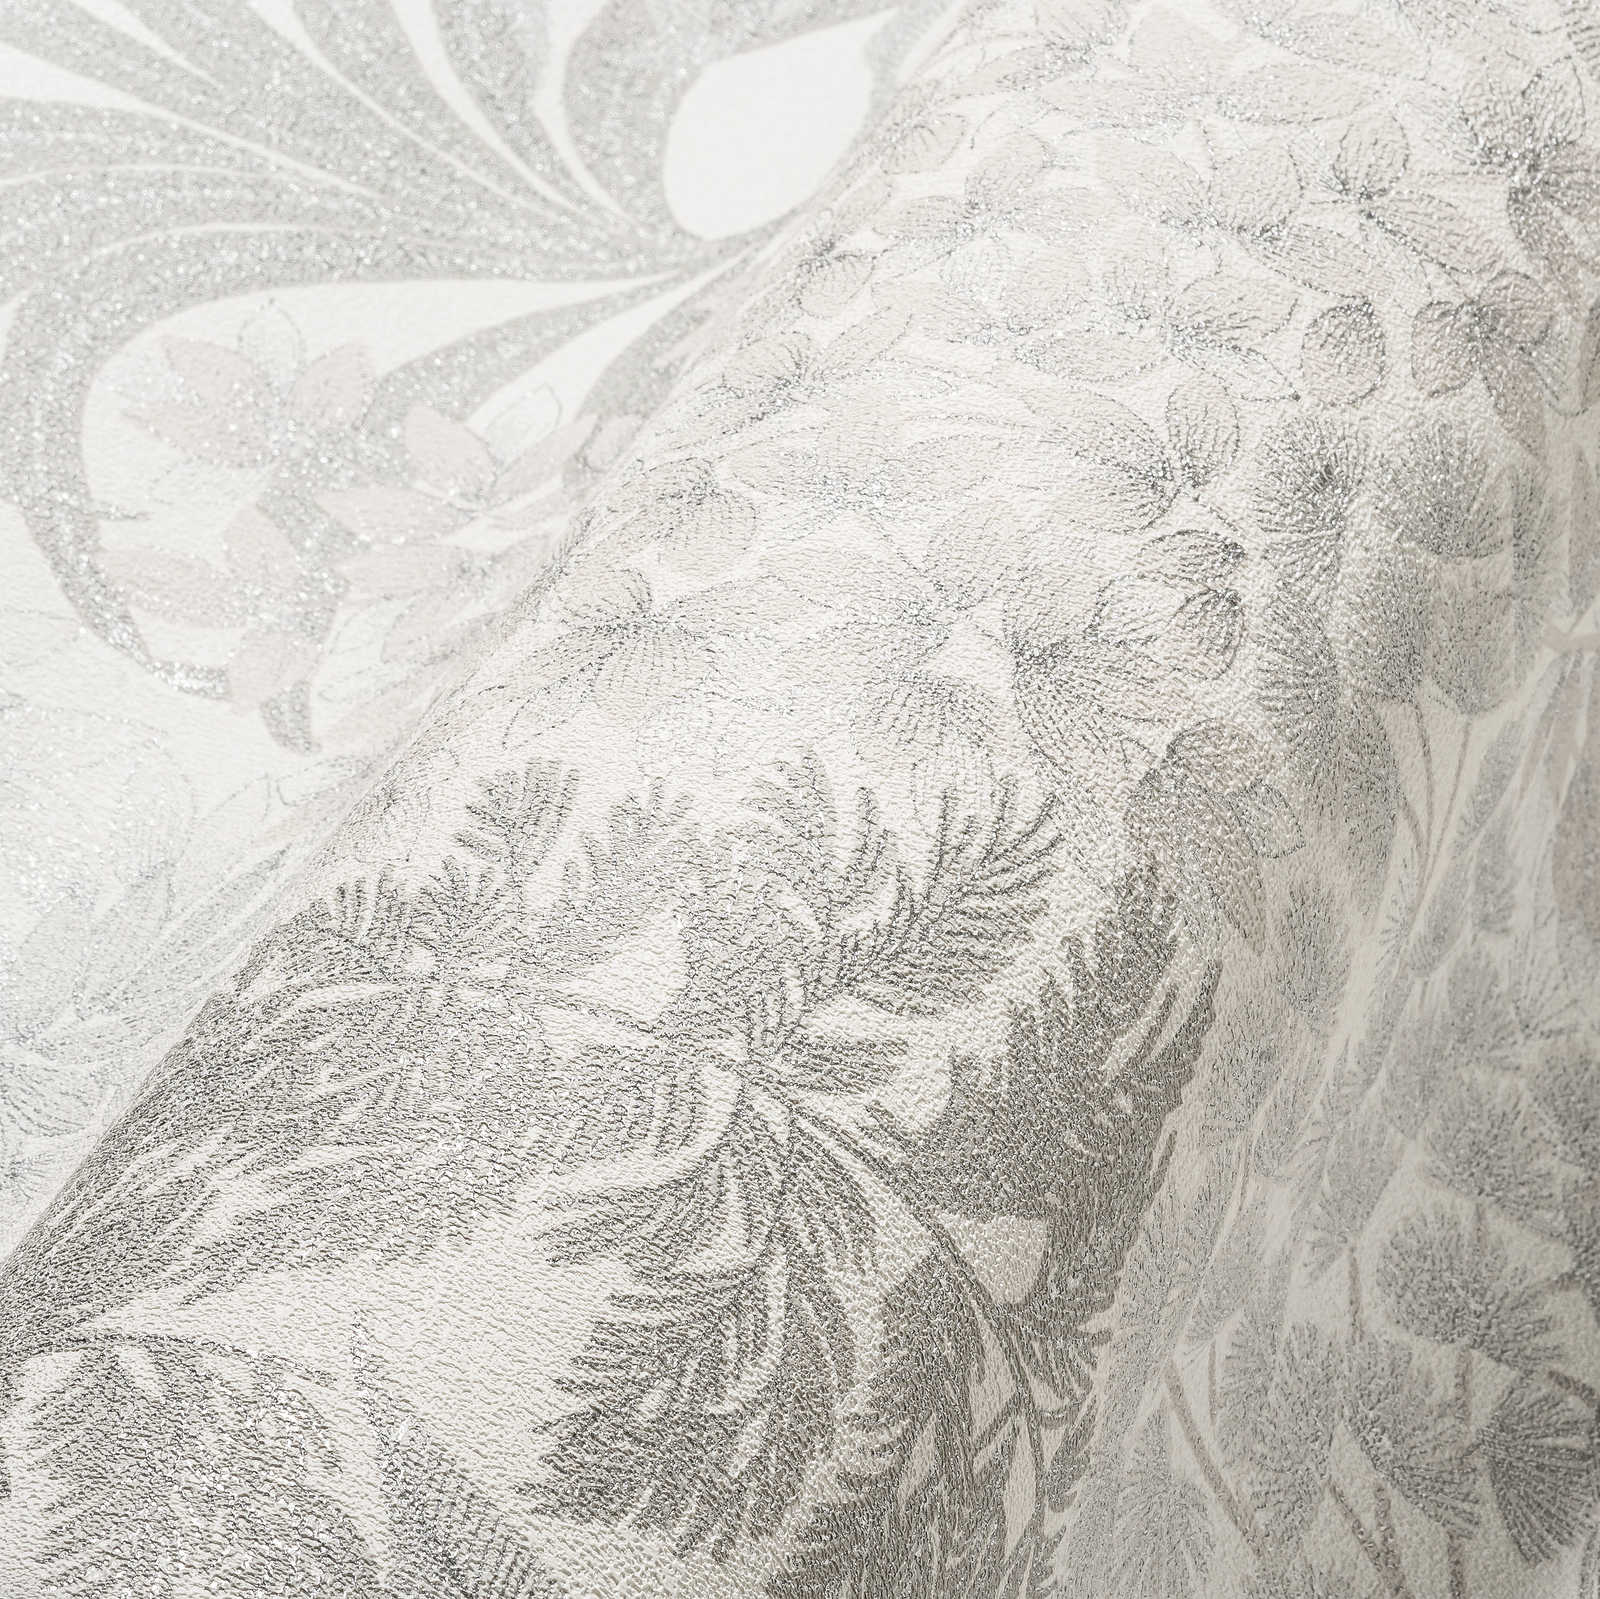             Papel pintado floral ligeramente brillante en un color sutil: blanco, gris, plata
        